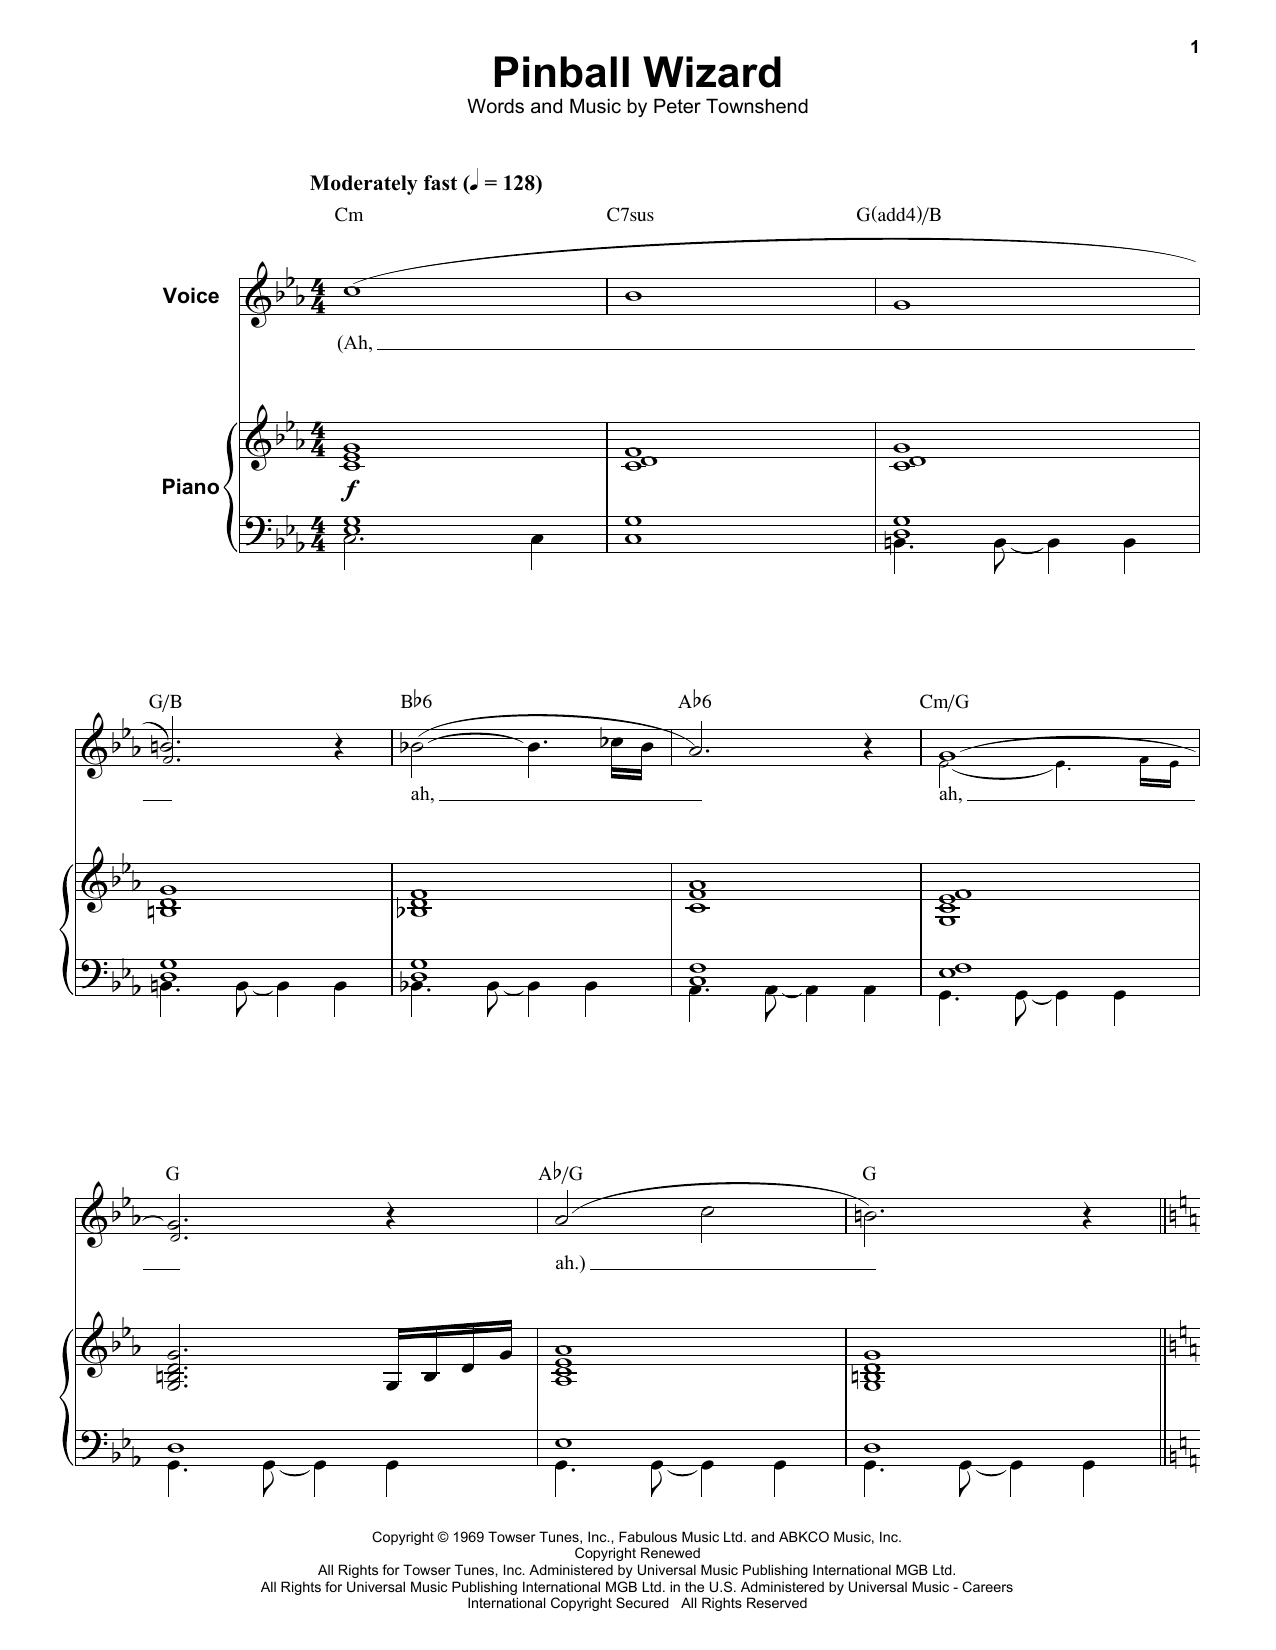 Elton John Pinball Wizard Sheet Music Notes & Chords for Keyboard Transcription - Download or Print PDF